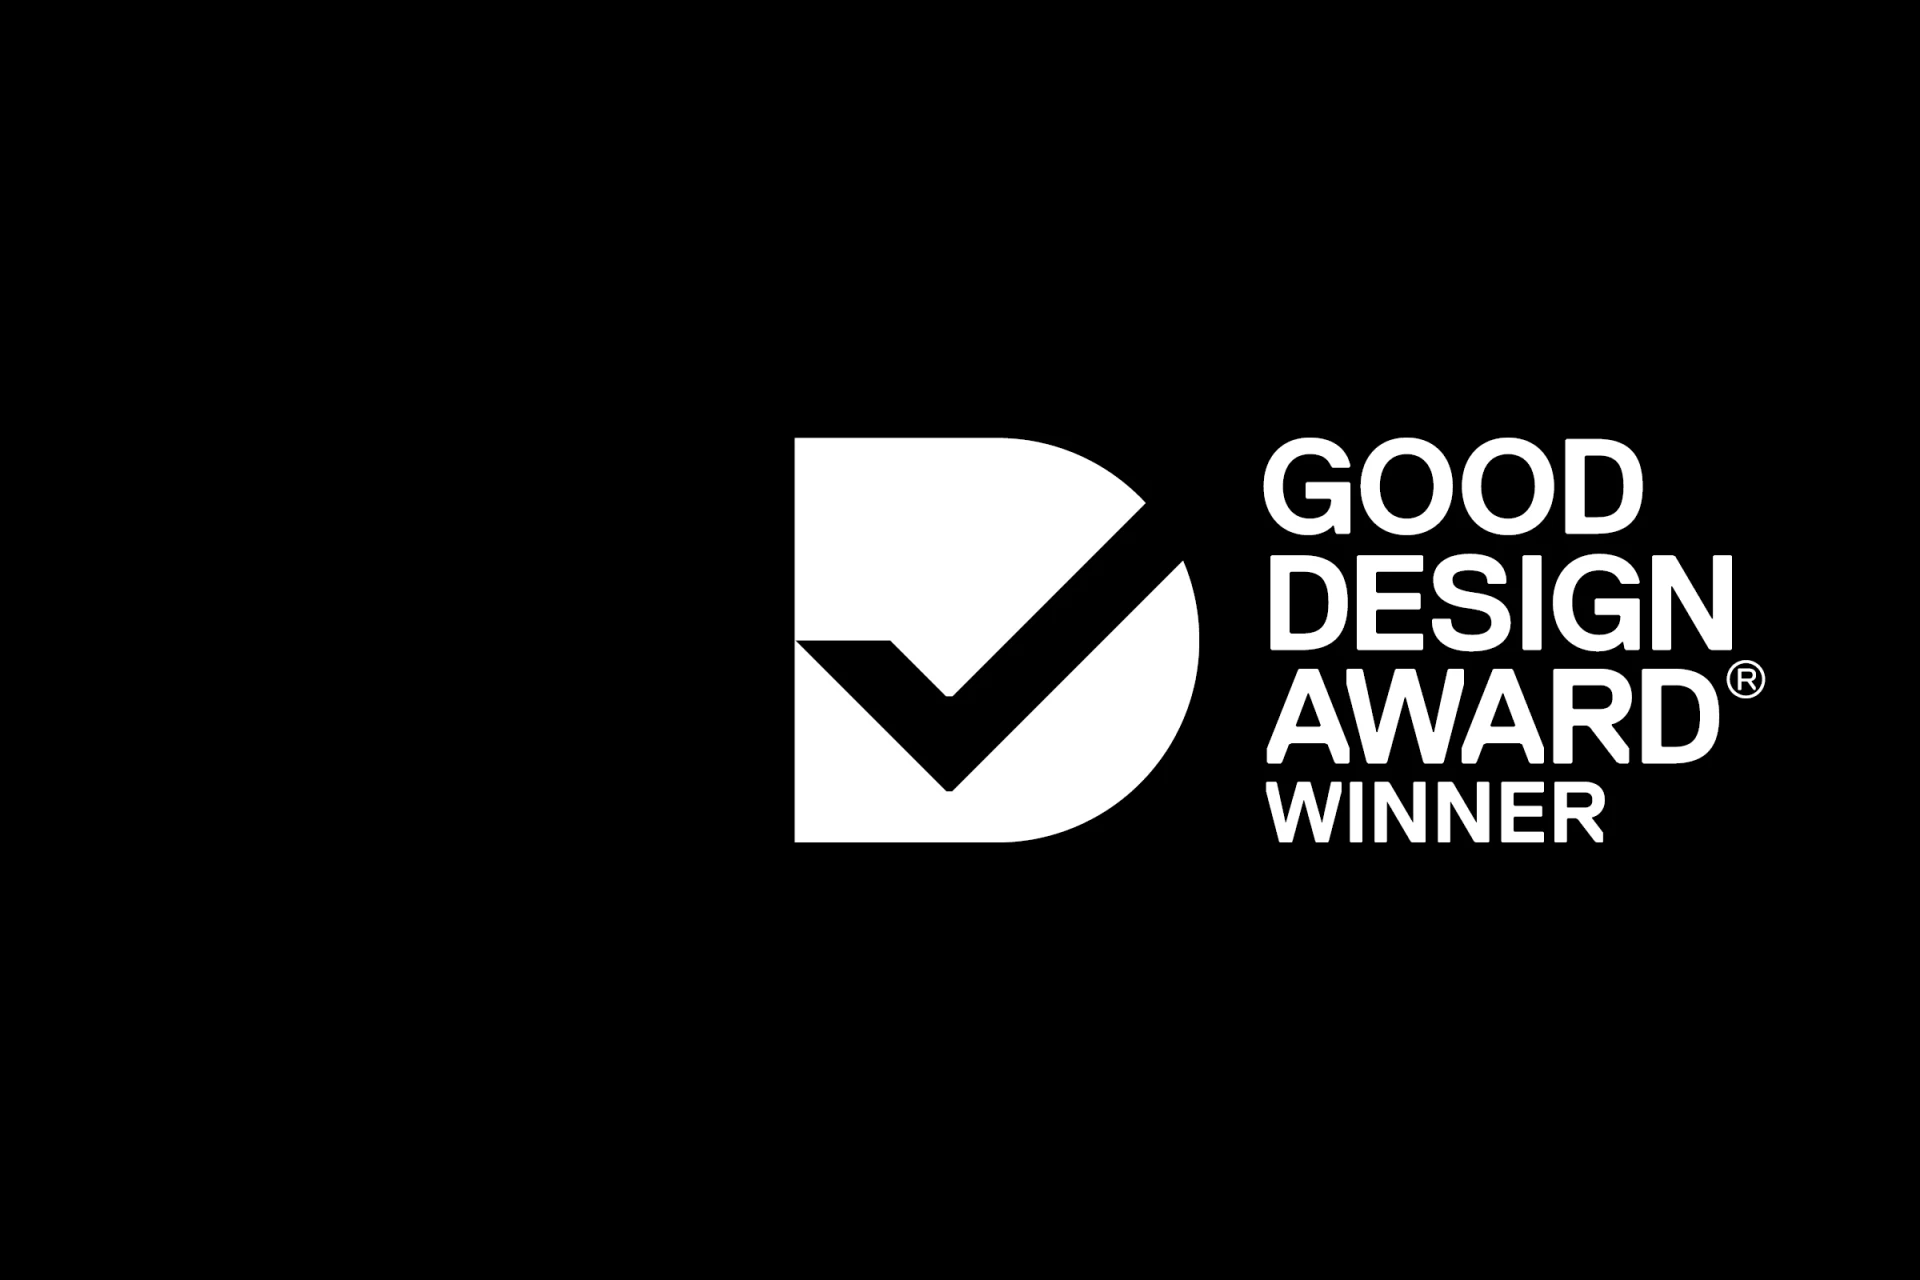 KOMPAN good design awards